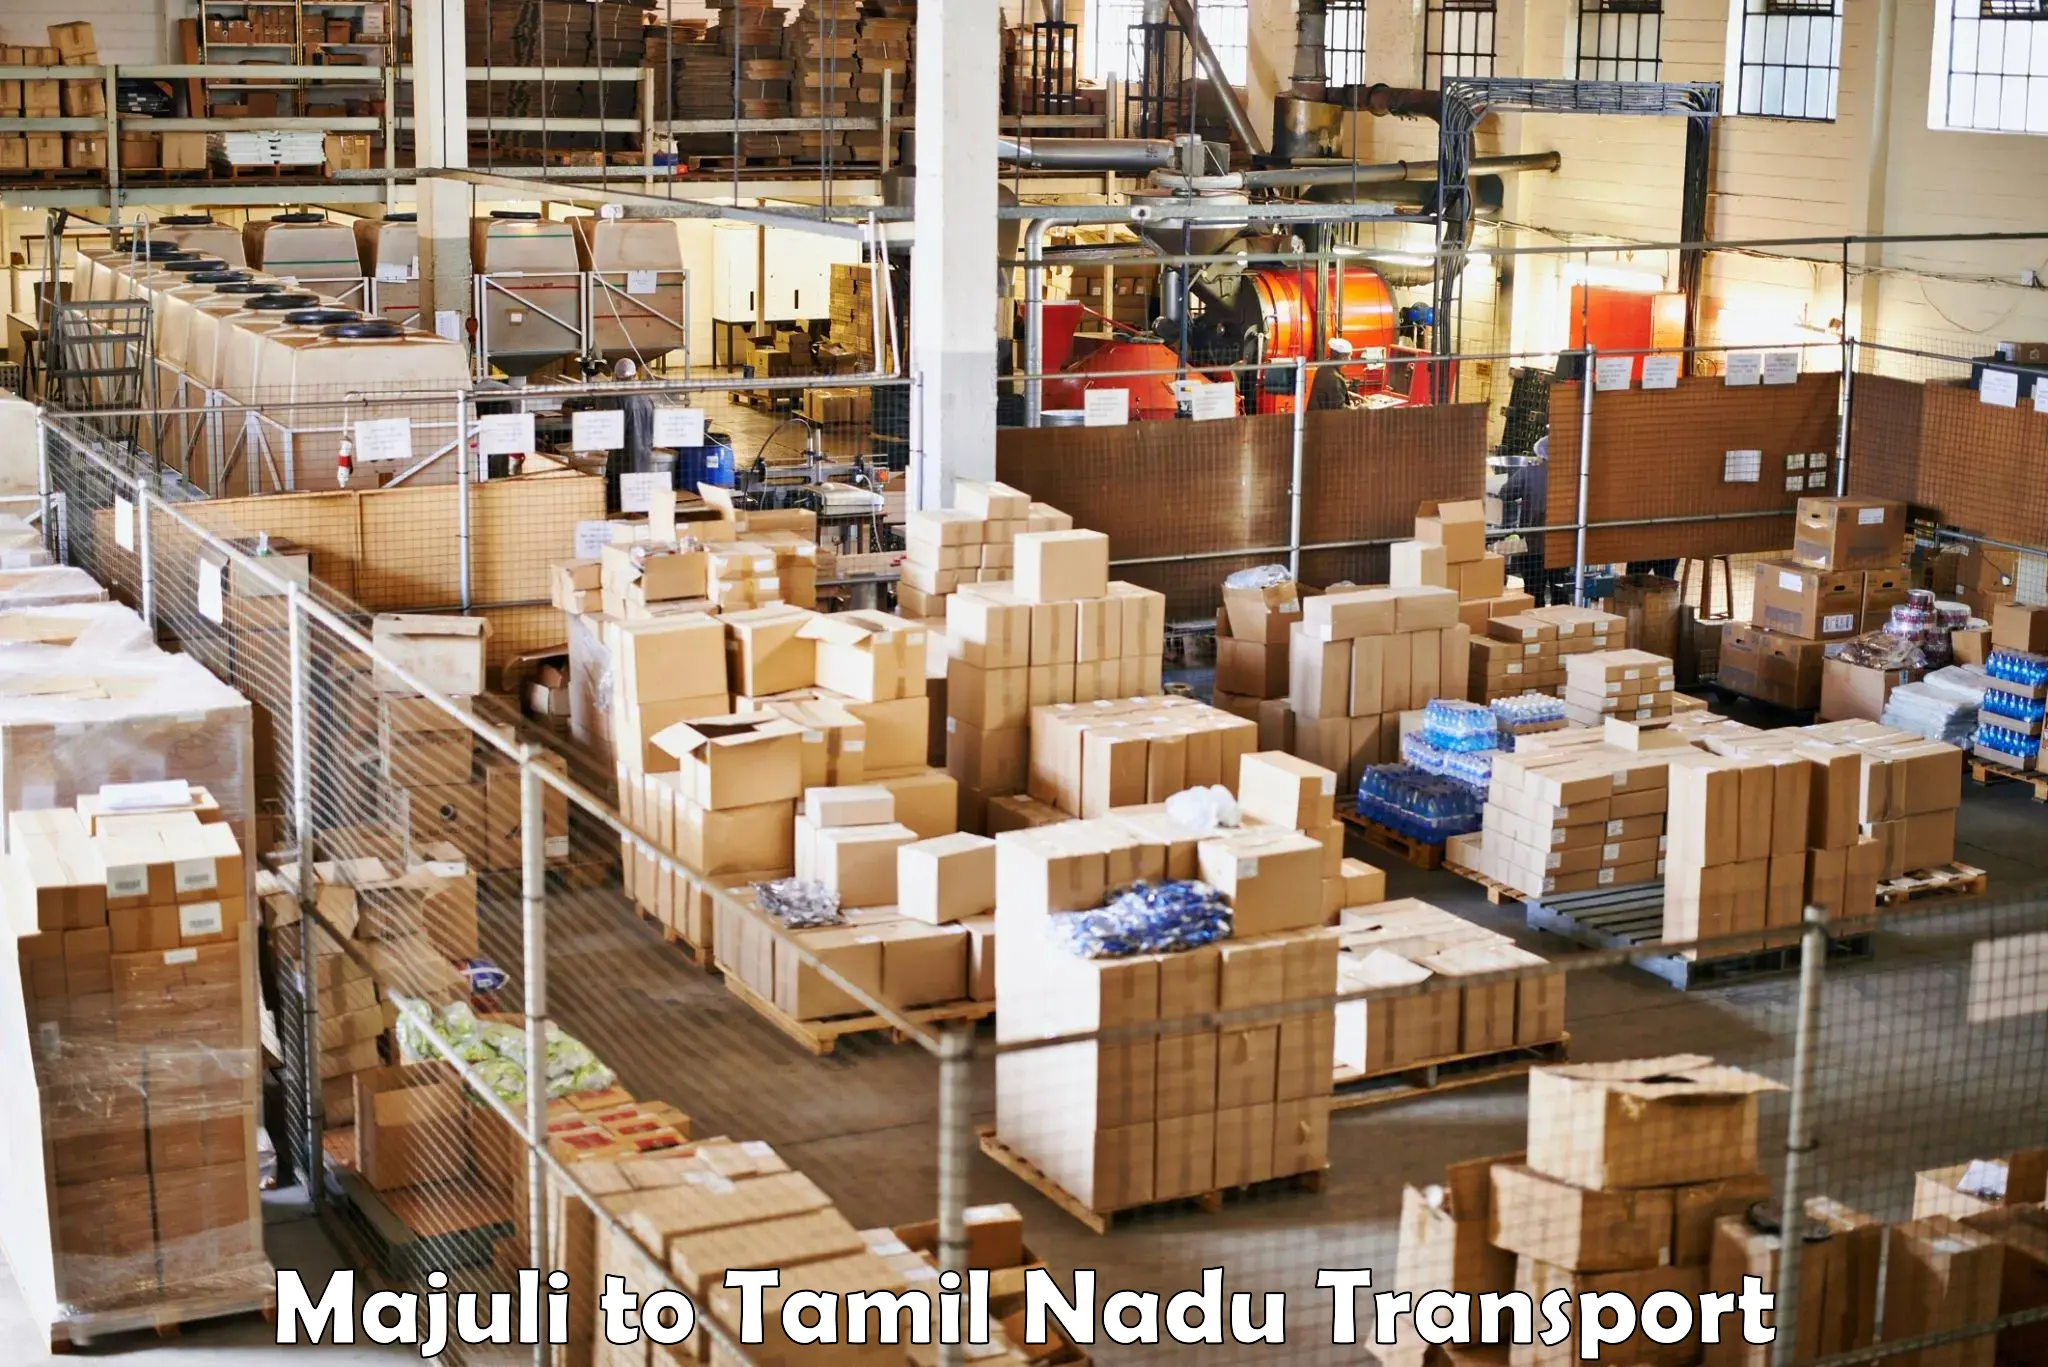 Delivery service Majuli to Gujiliamparai